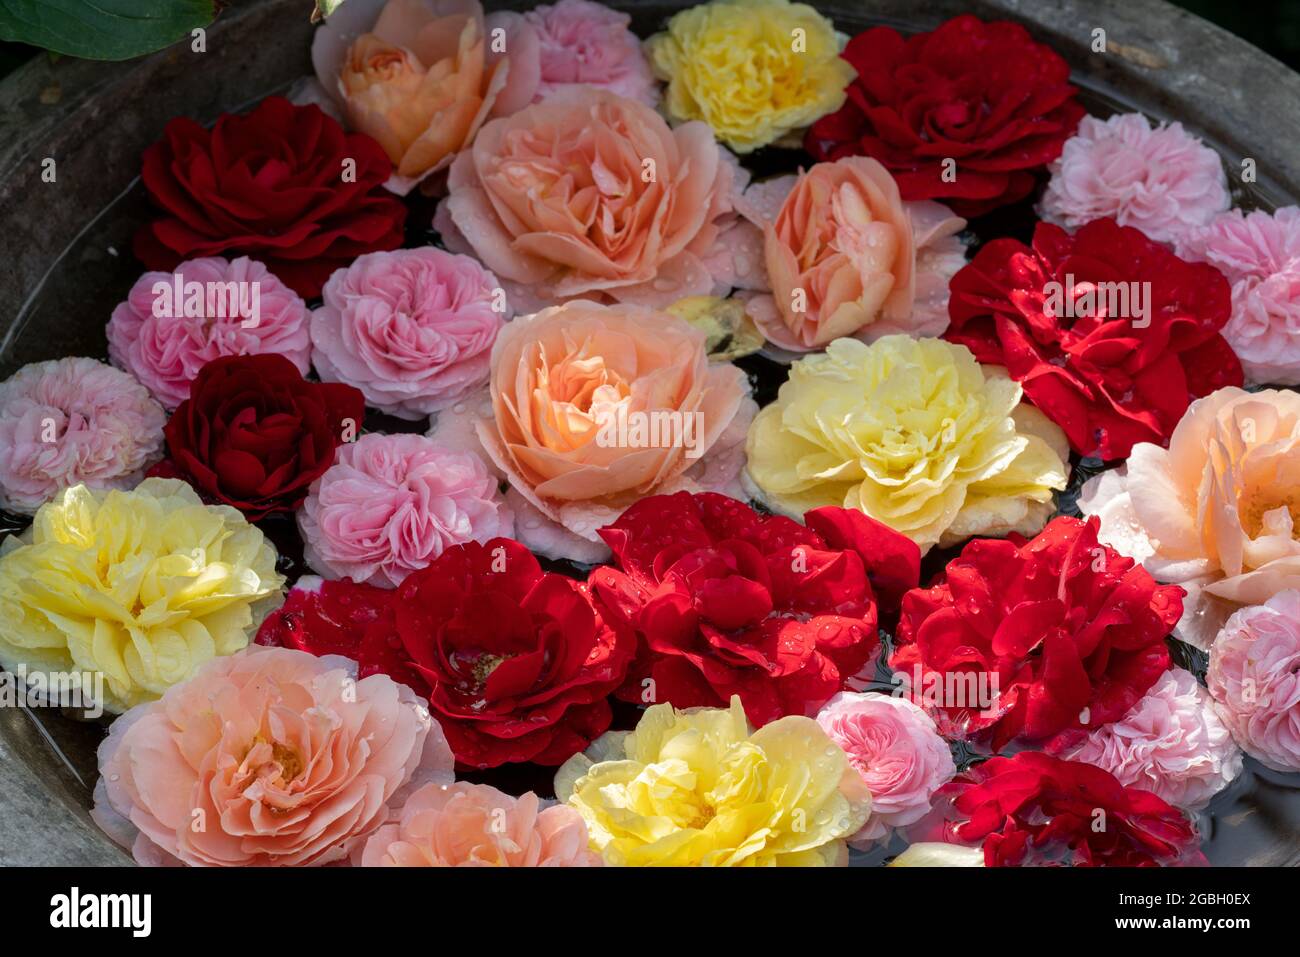 Botanica, bacino con fiori di rose, PER IL SALUTO / CARTOLINA-USO IN GERM.SPEAK.C ALCUNE RESTRIZIONI POSSONO APPLICARSI Foto Stock